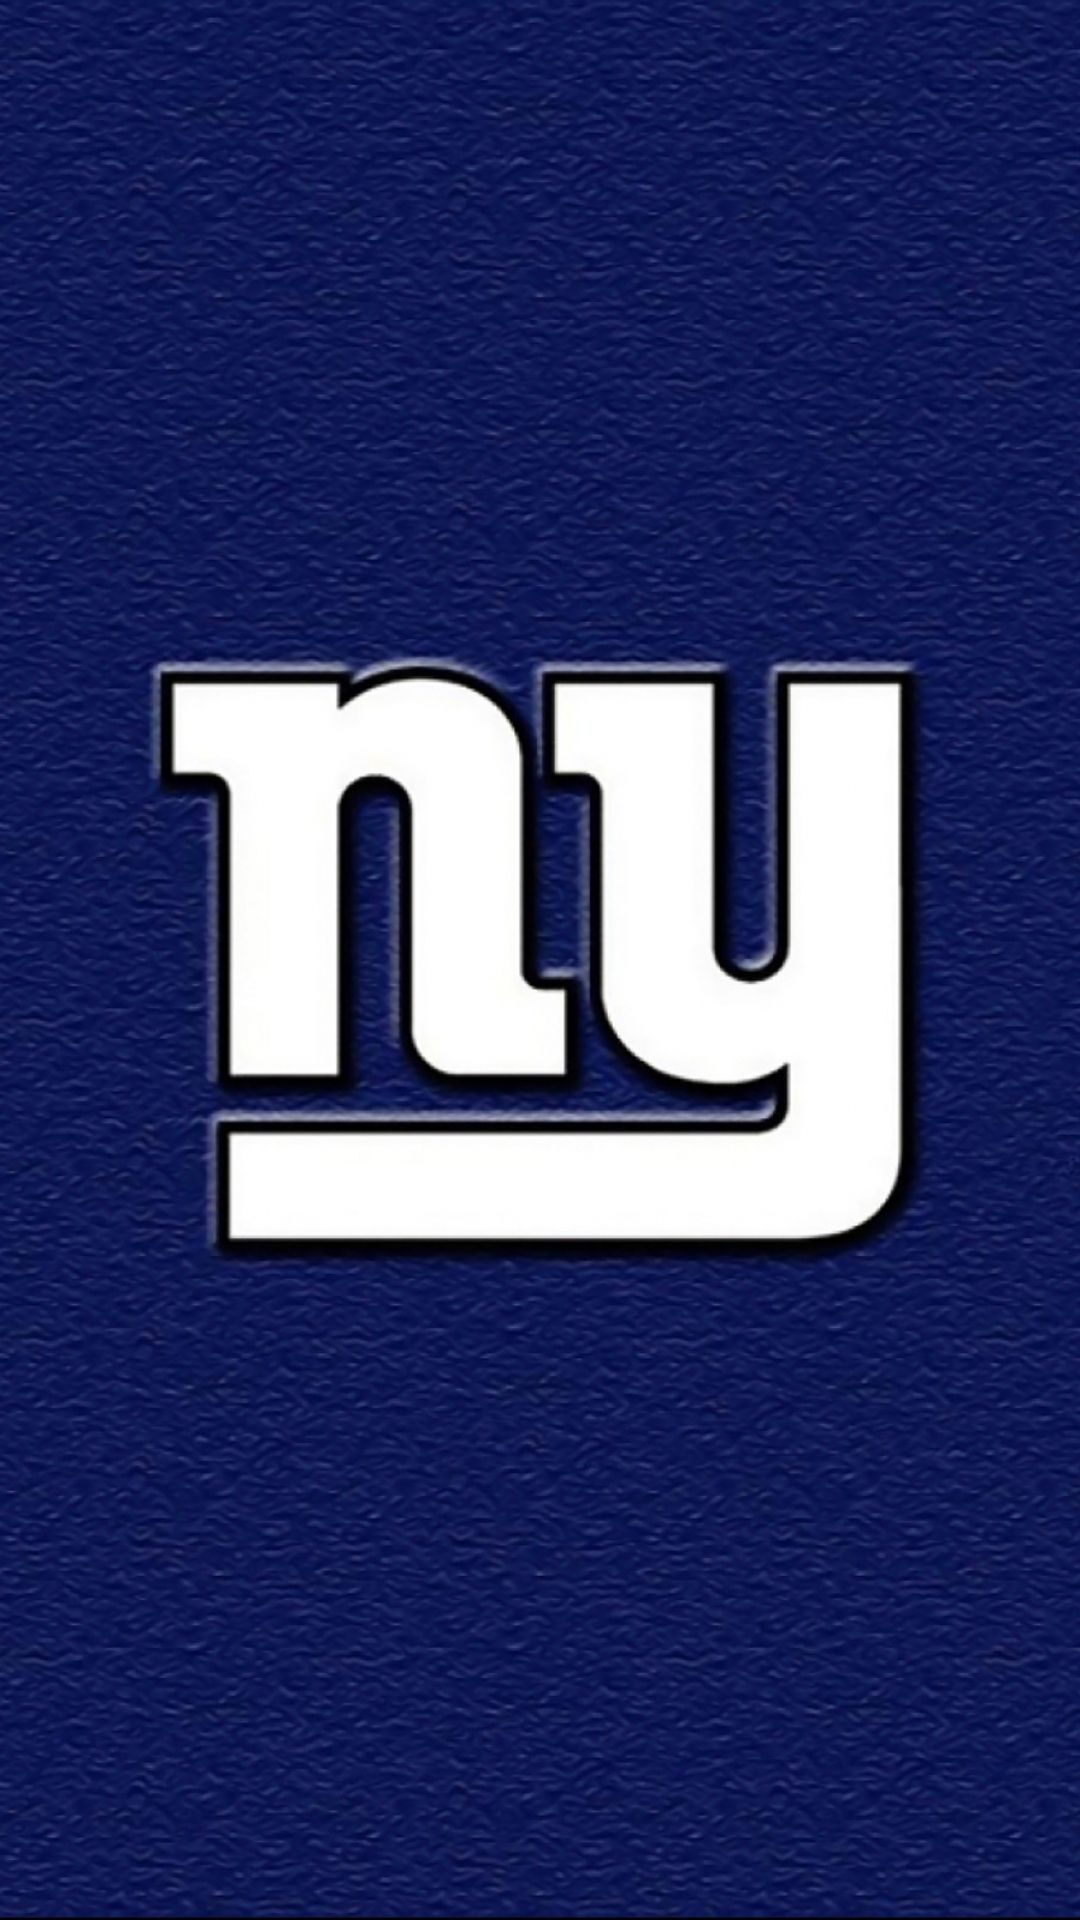 6 New York Giants Apple/iPhone 7 Plus